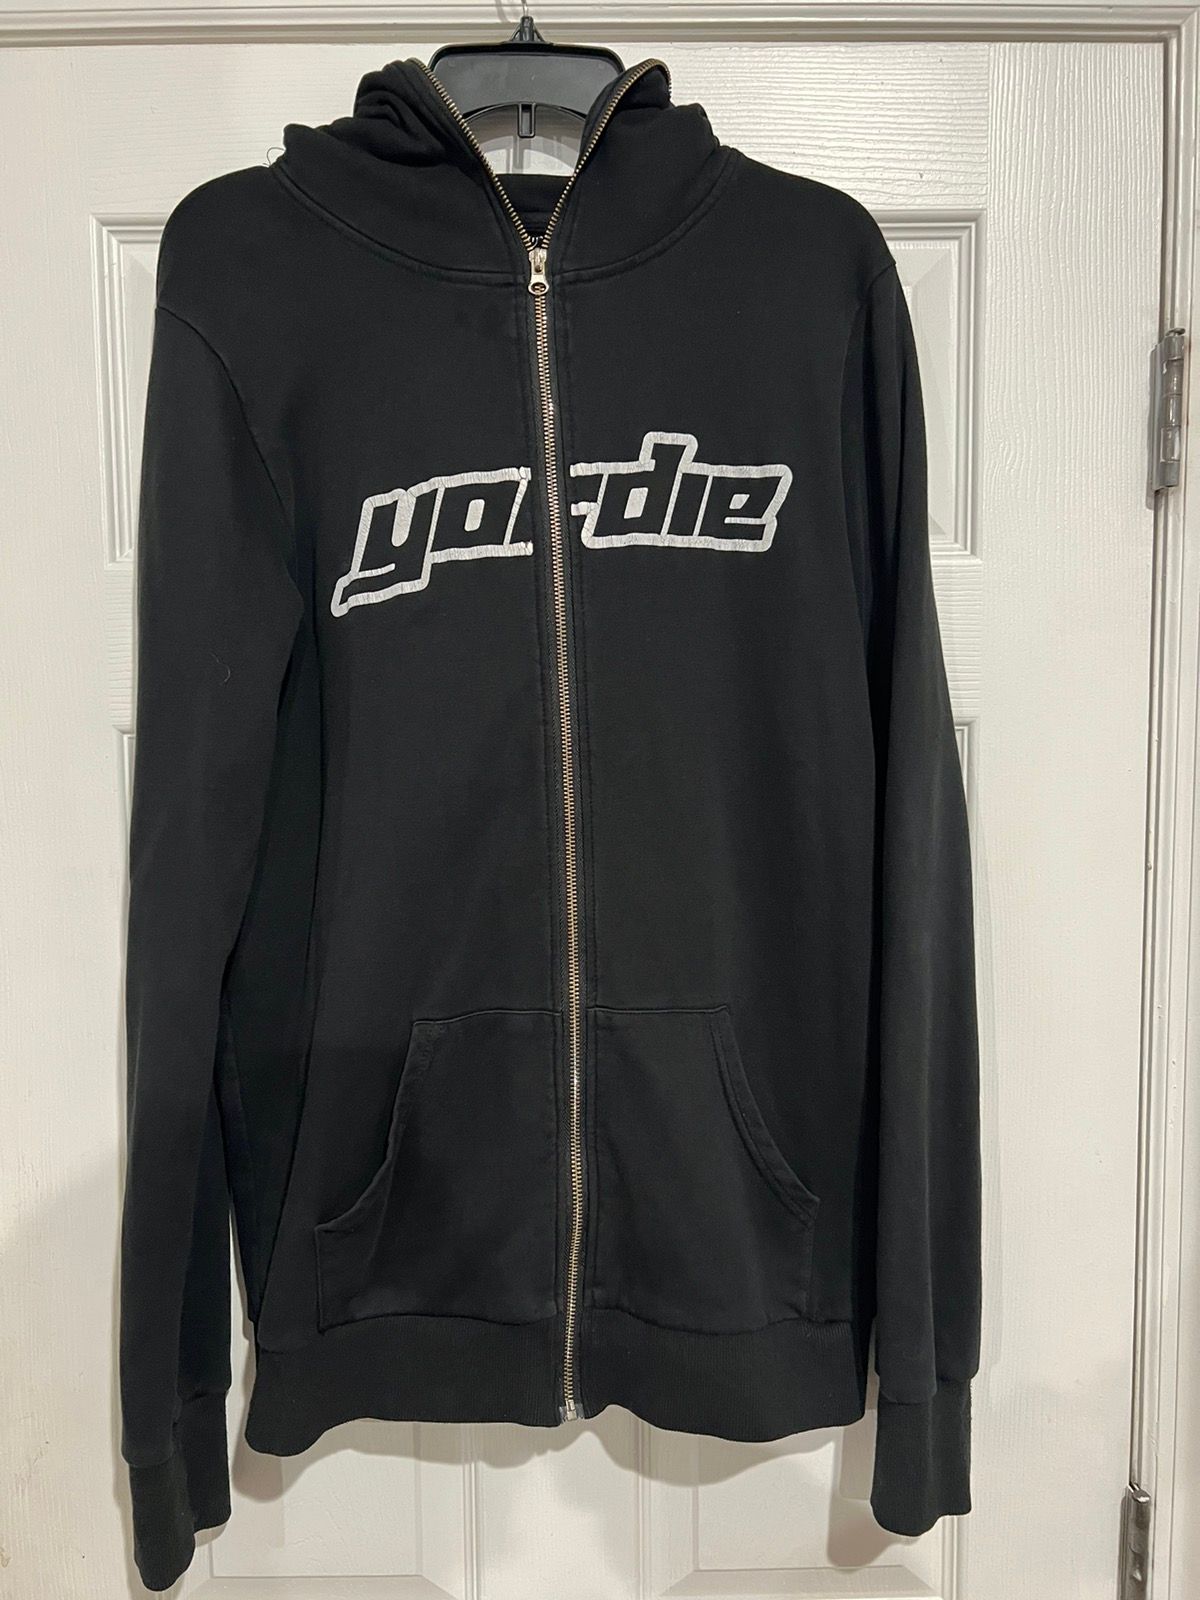 Japanese Brand $NOT yordie Bonehead full zip up hoodie | Grailed